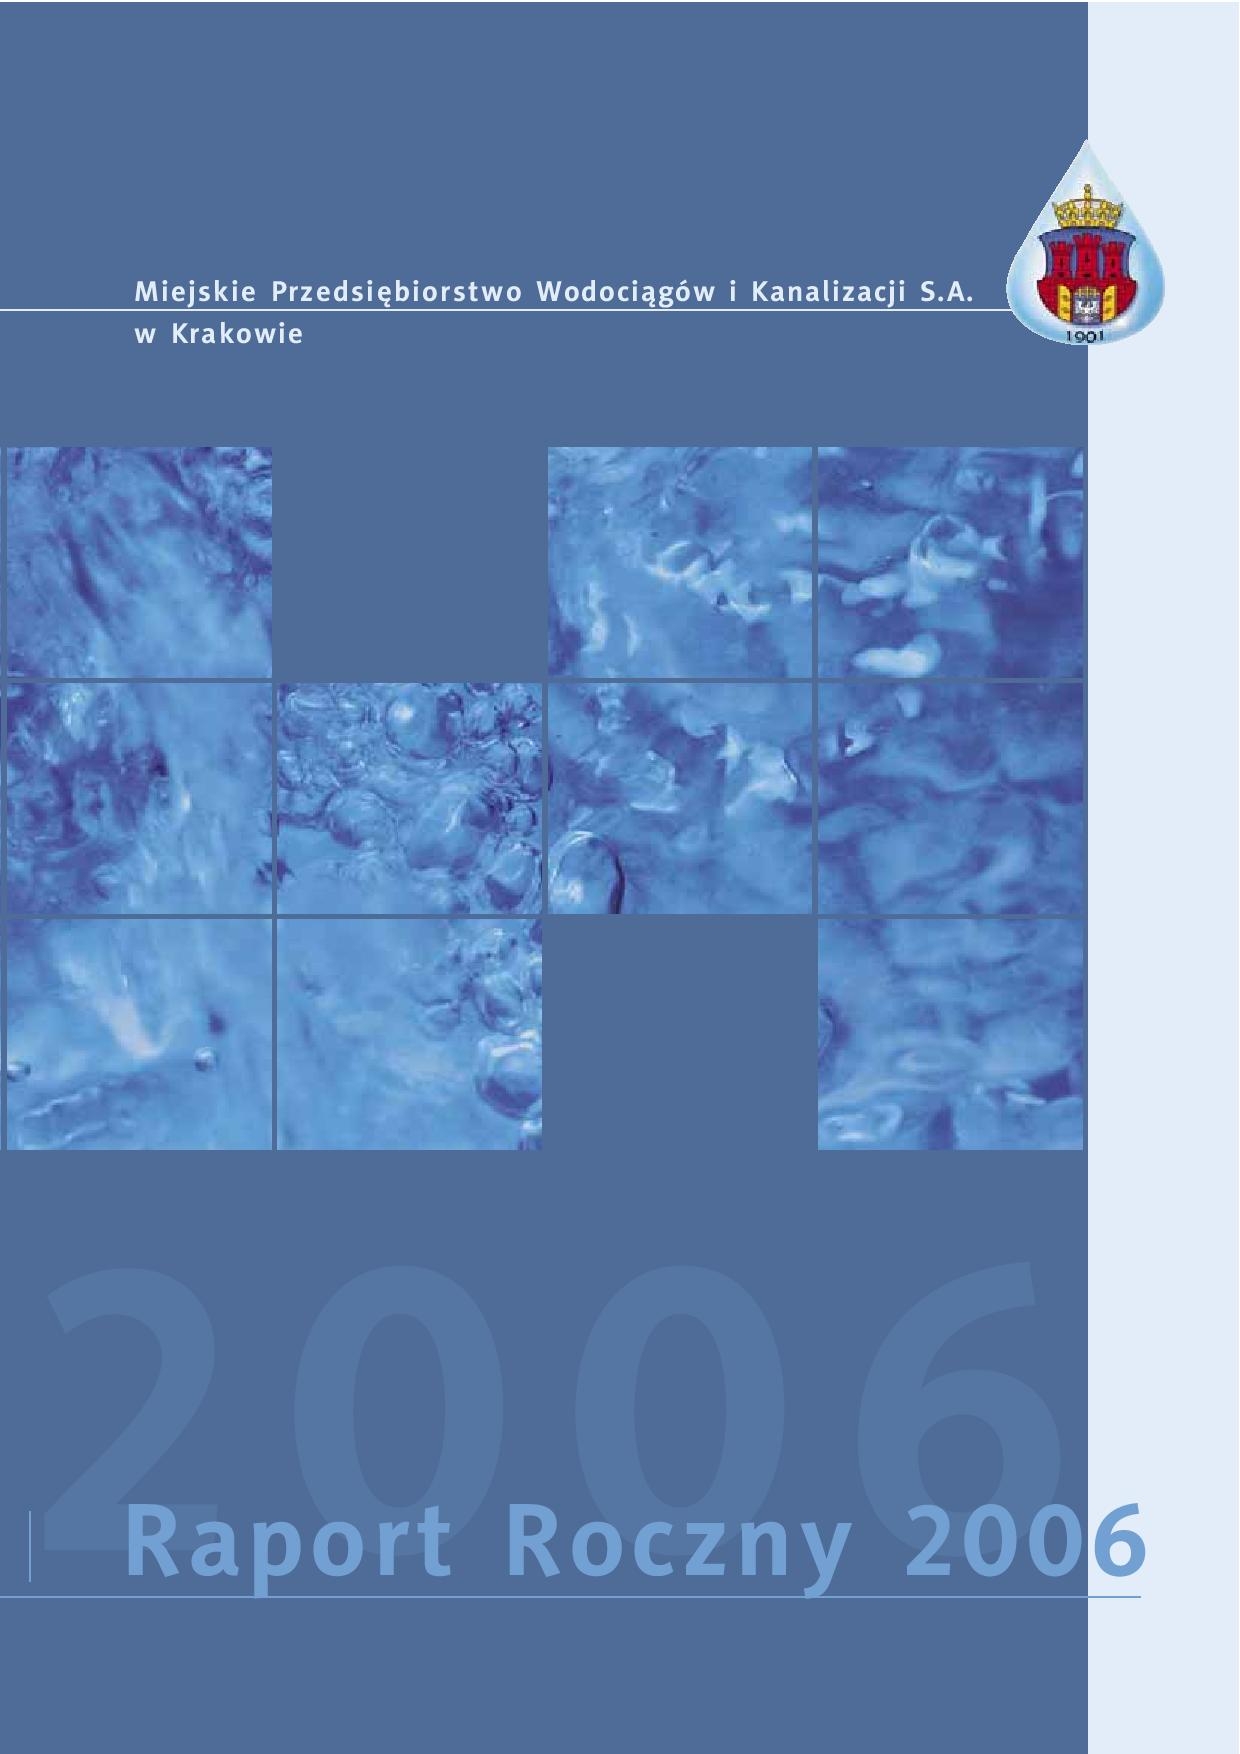 Tytuł: Zobacz raport - 2006 - poszczególne strony dostępne tylko po kliknieciu na link